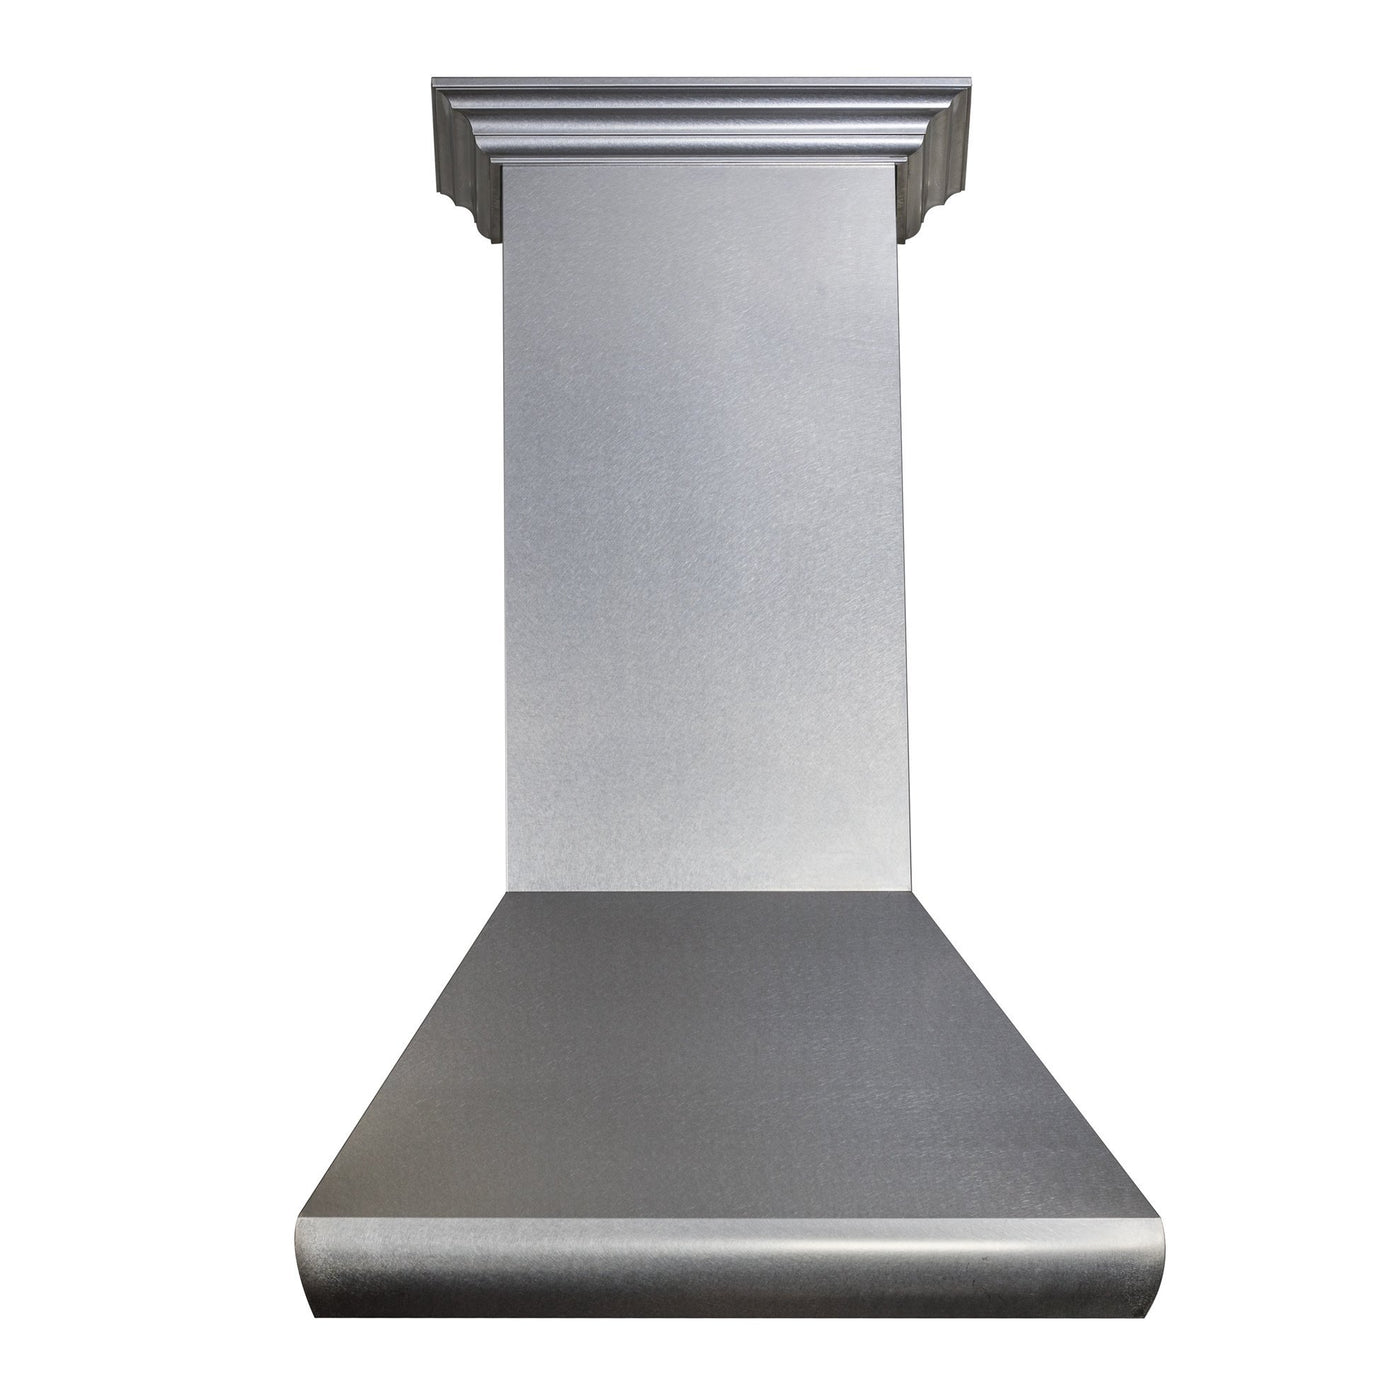 ZLINE Kitchen and Bath, ZLINE Wall Mount Range Hood In DuraSnow® Stainless Steel (8687S), 8687S-30,